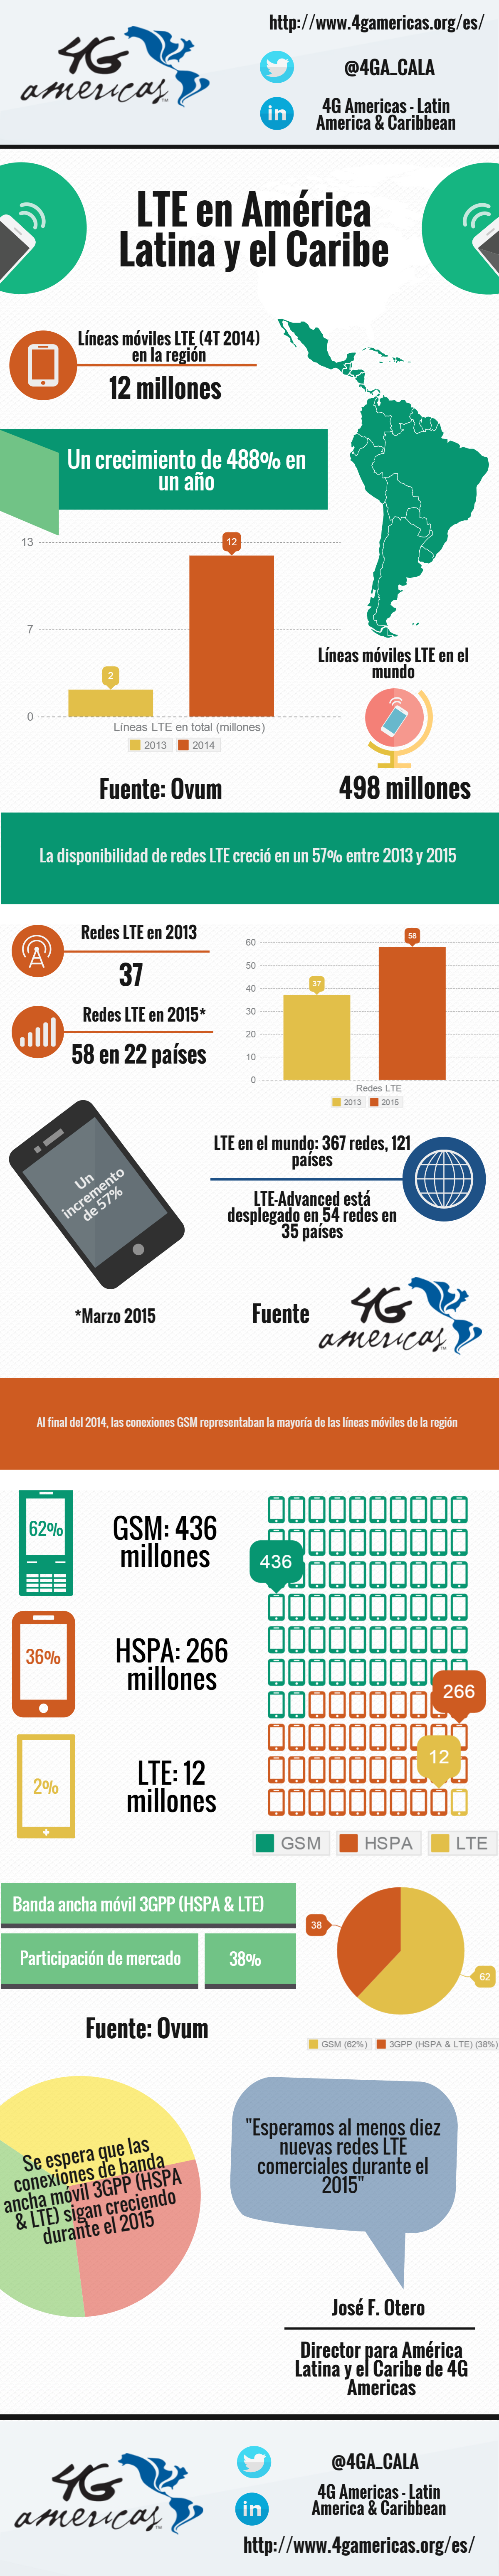 ¿Qué tanto han crecido las redes 4G en Latinoamérica?